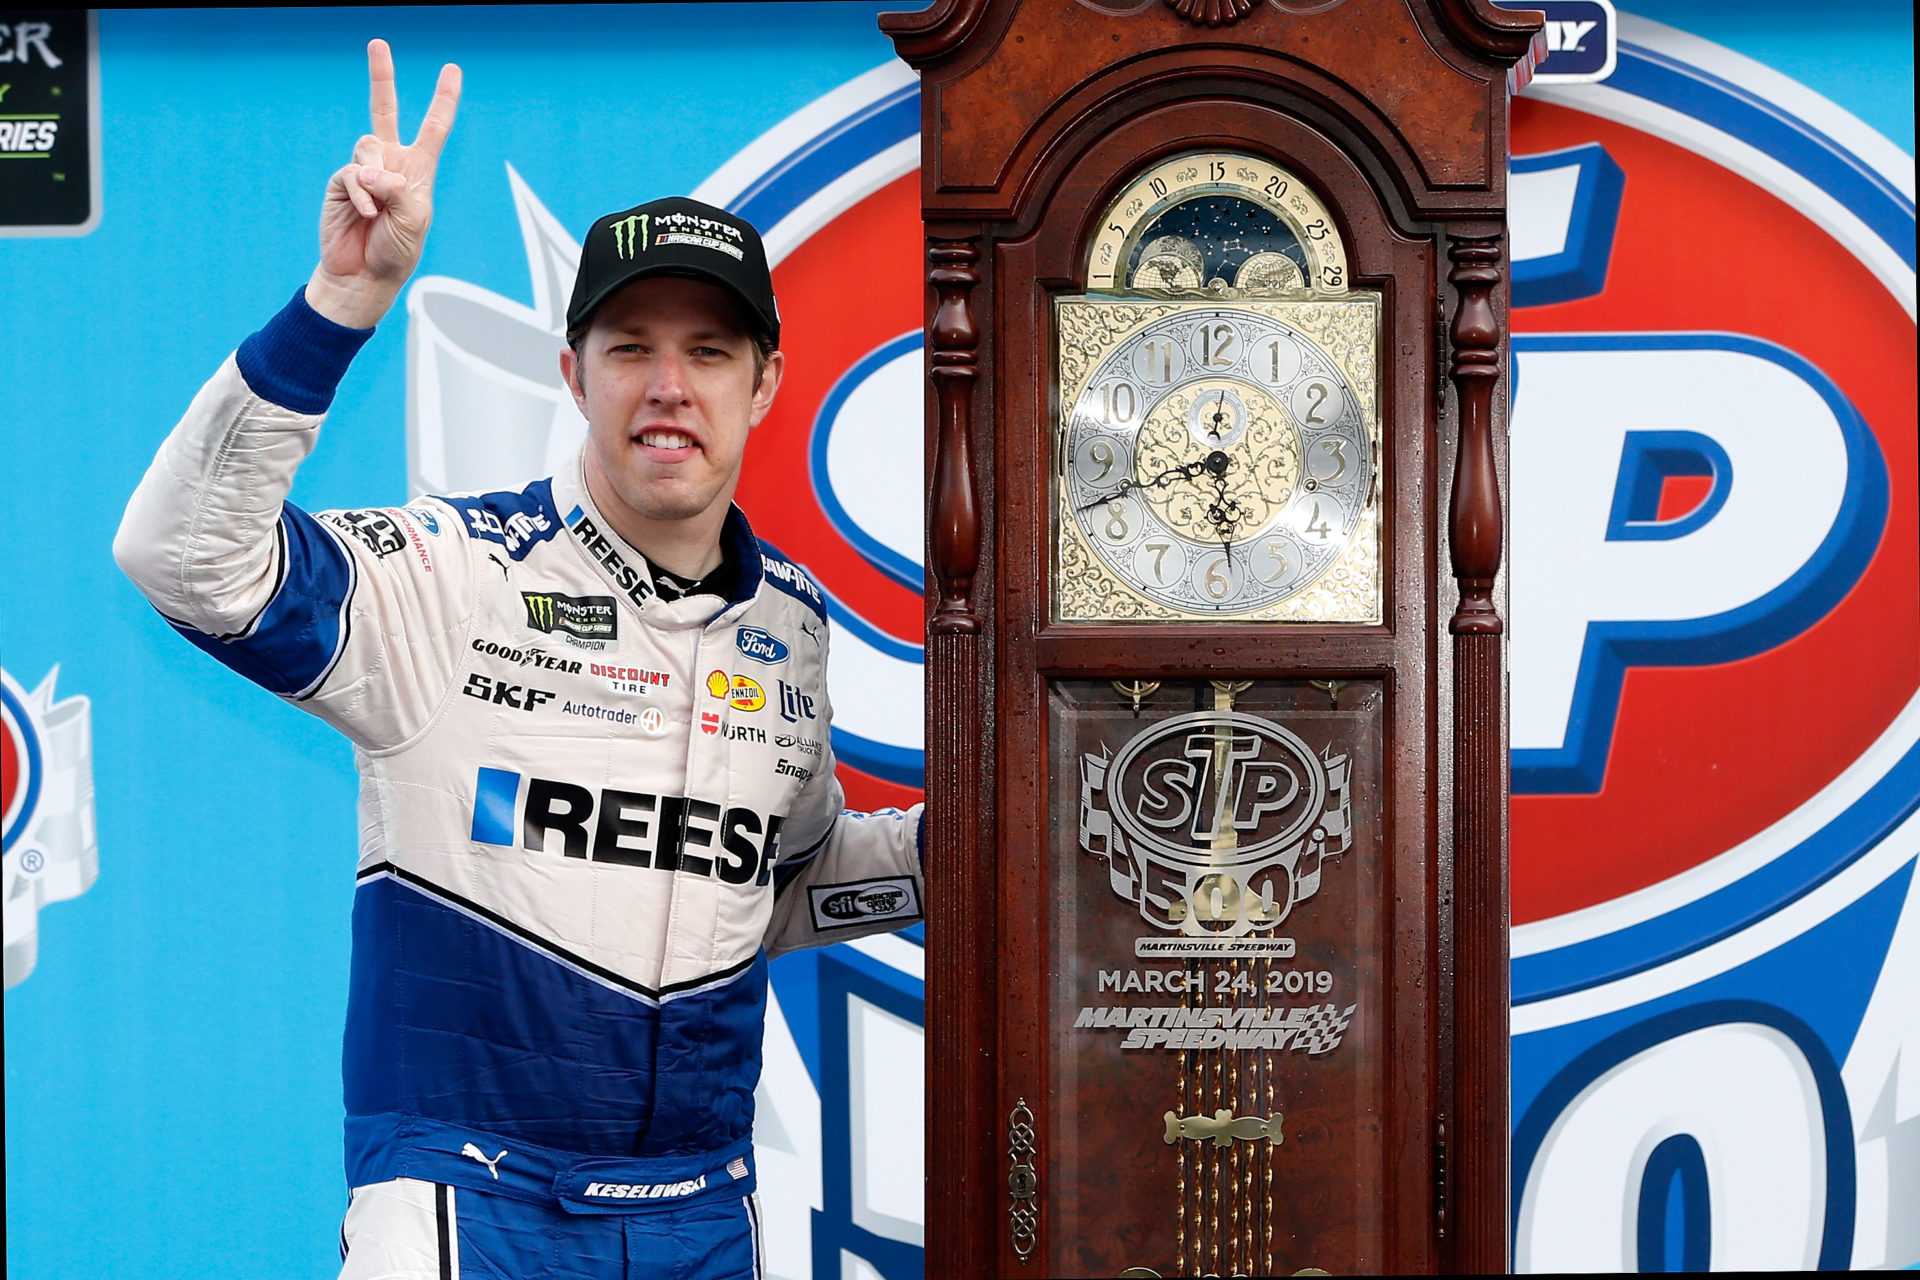 Tout ce que vous devez savoir sur le trophée emblématique et unique de la course NASCAR à Martinsville Speedway